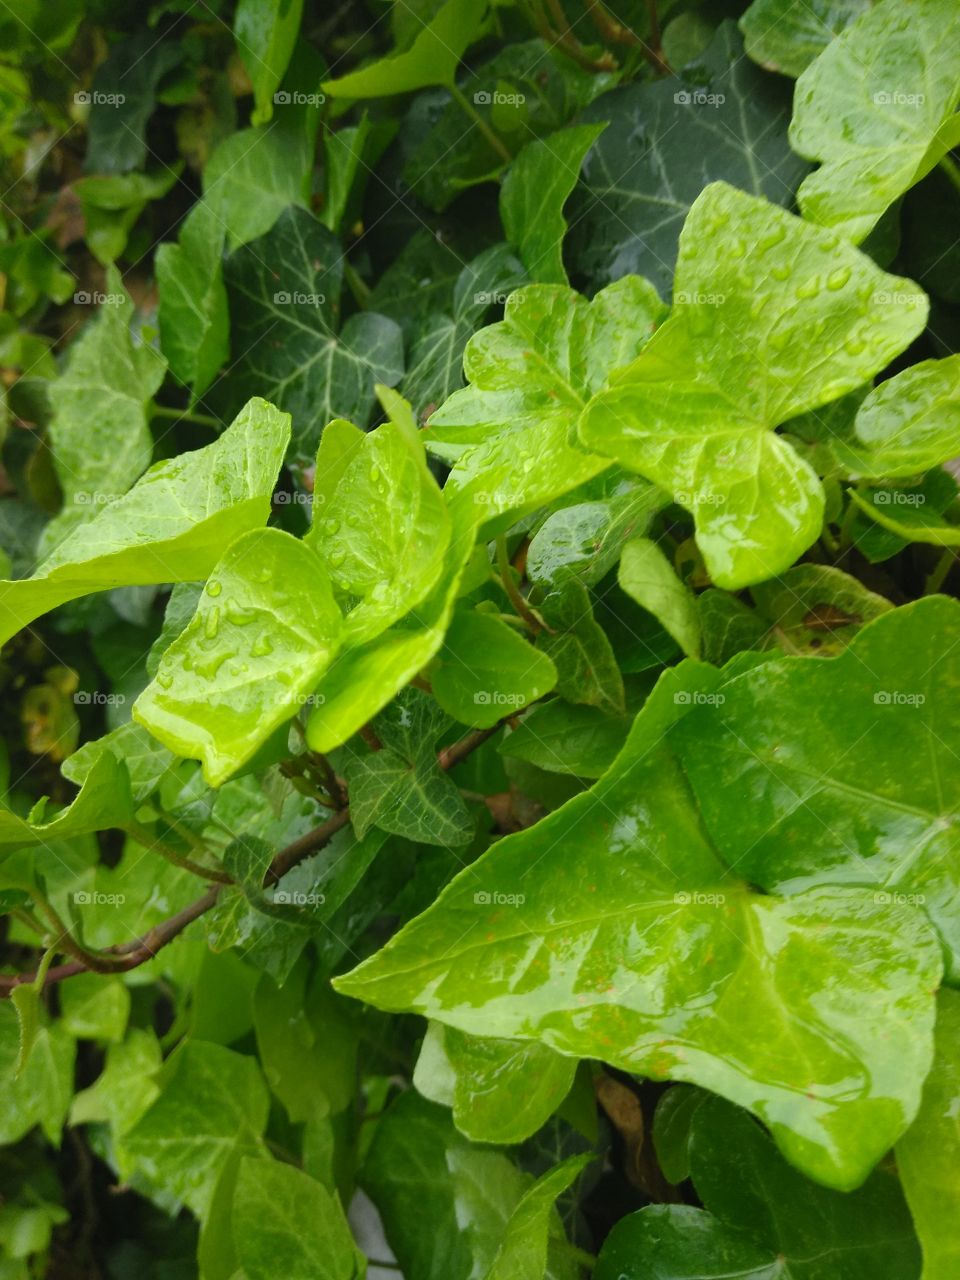 Raindrops on Leaf's